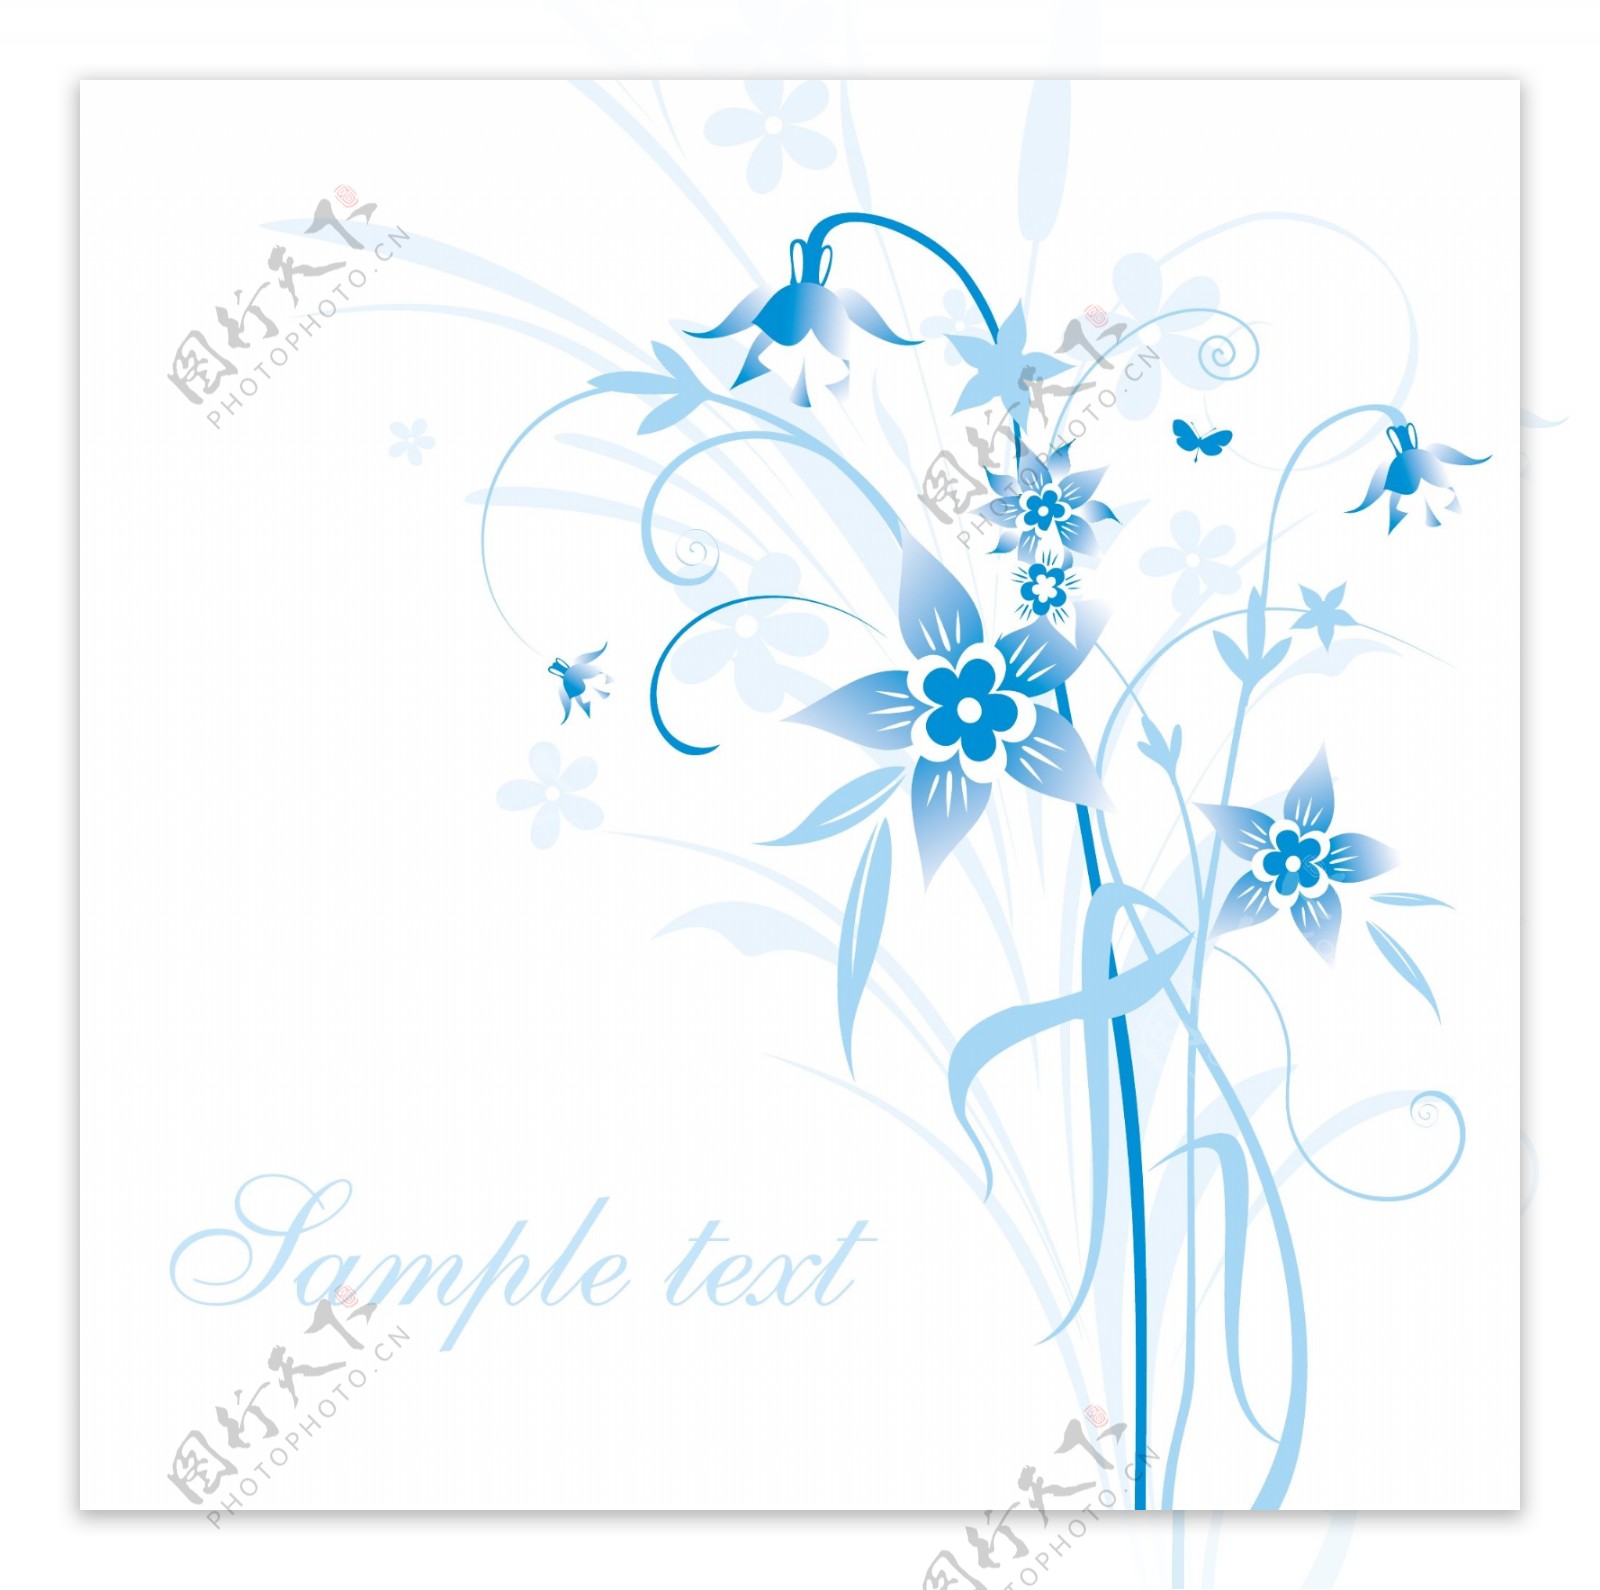 简约的蓝色手绘花卉和在背景矢量素材5文本模式